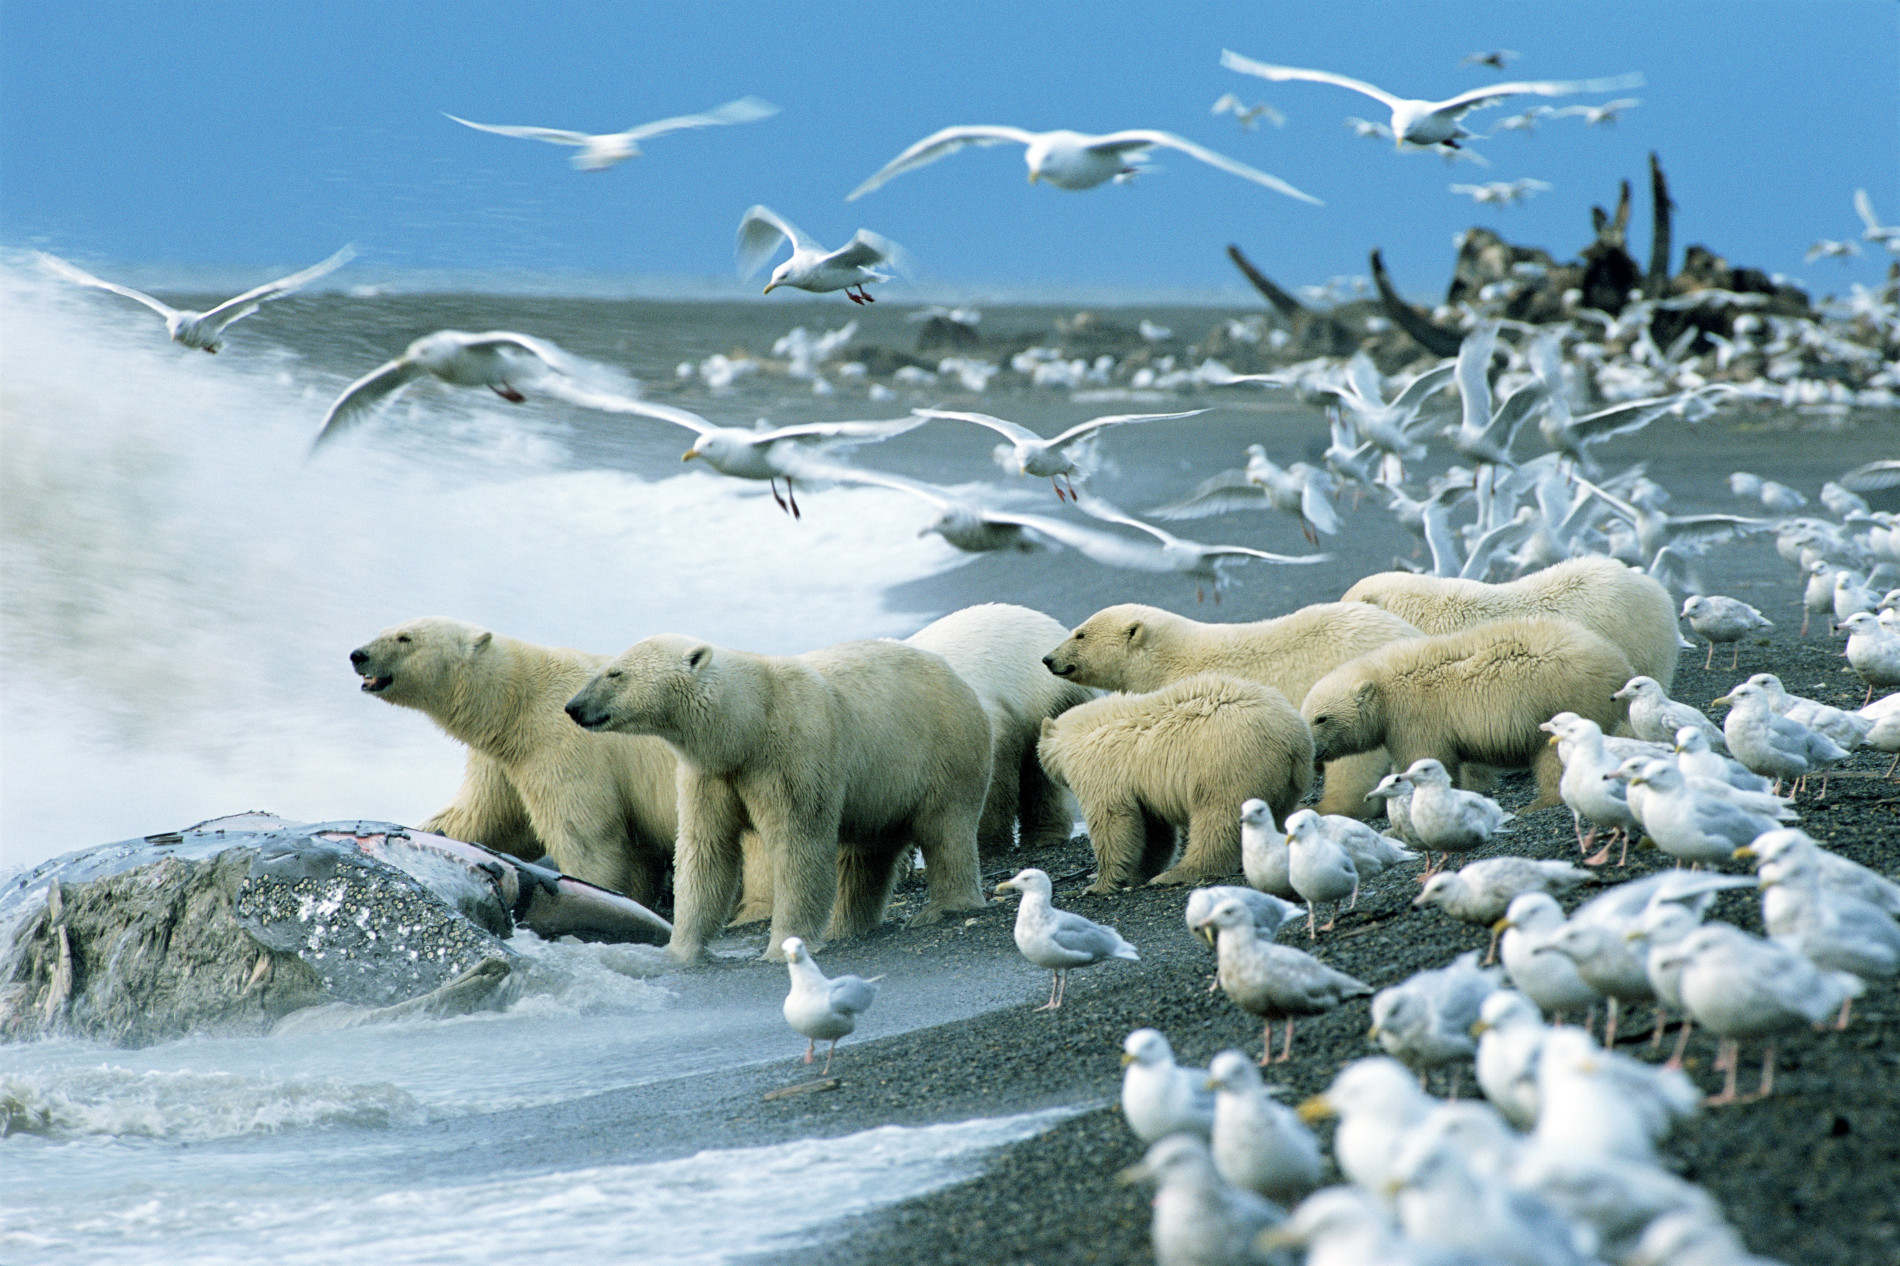 Животный мир природной зоны арктические пустыни